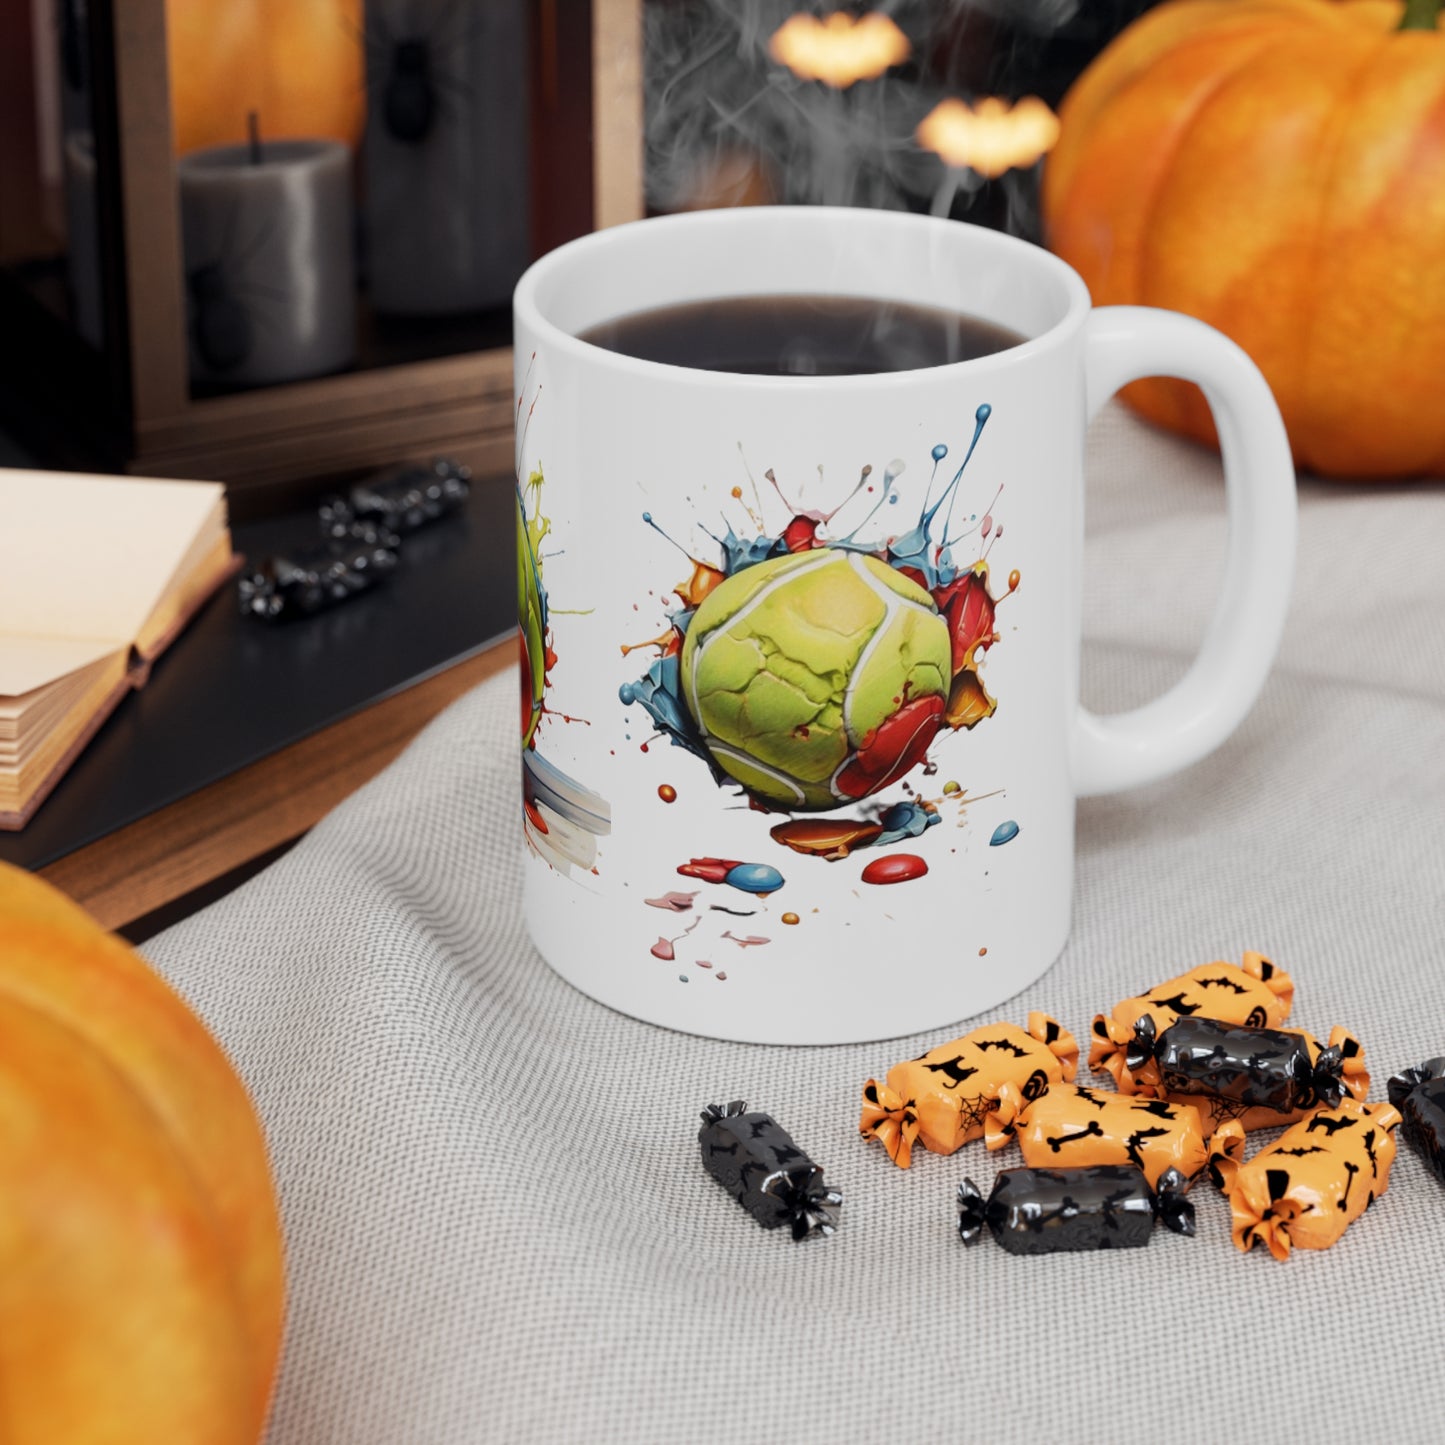 Colourful Messy Tennis Ball's Mug - Ceramic Coffee Mug 11oz